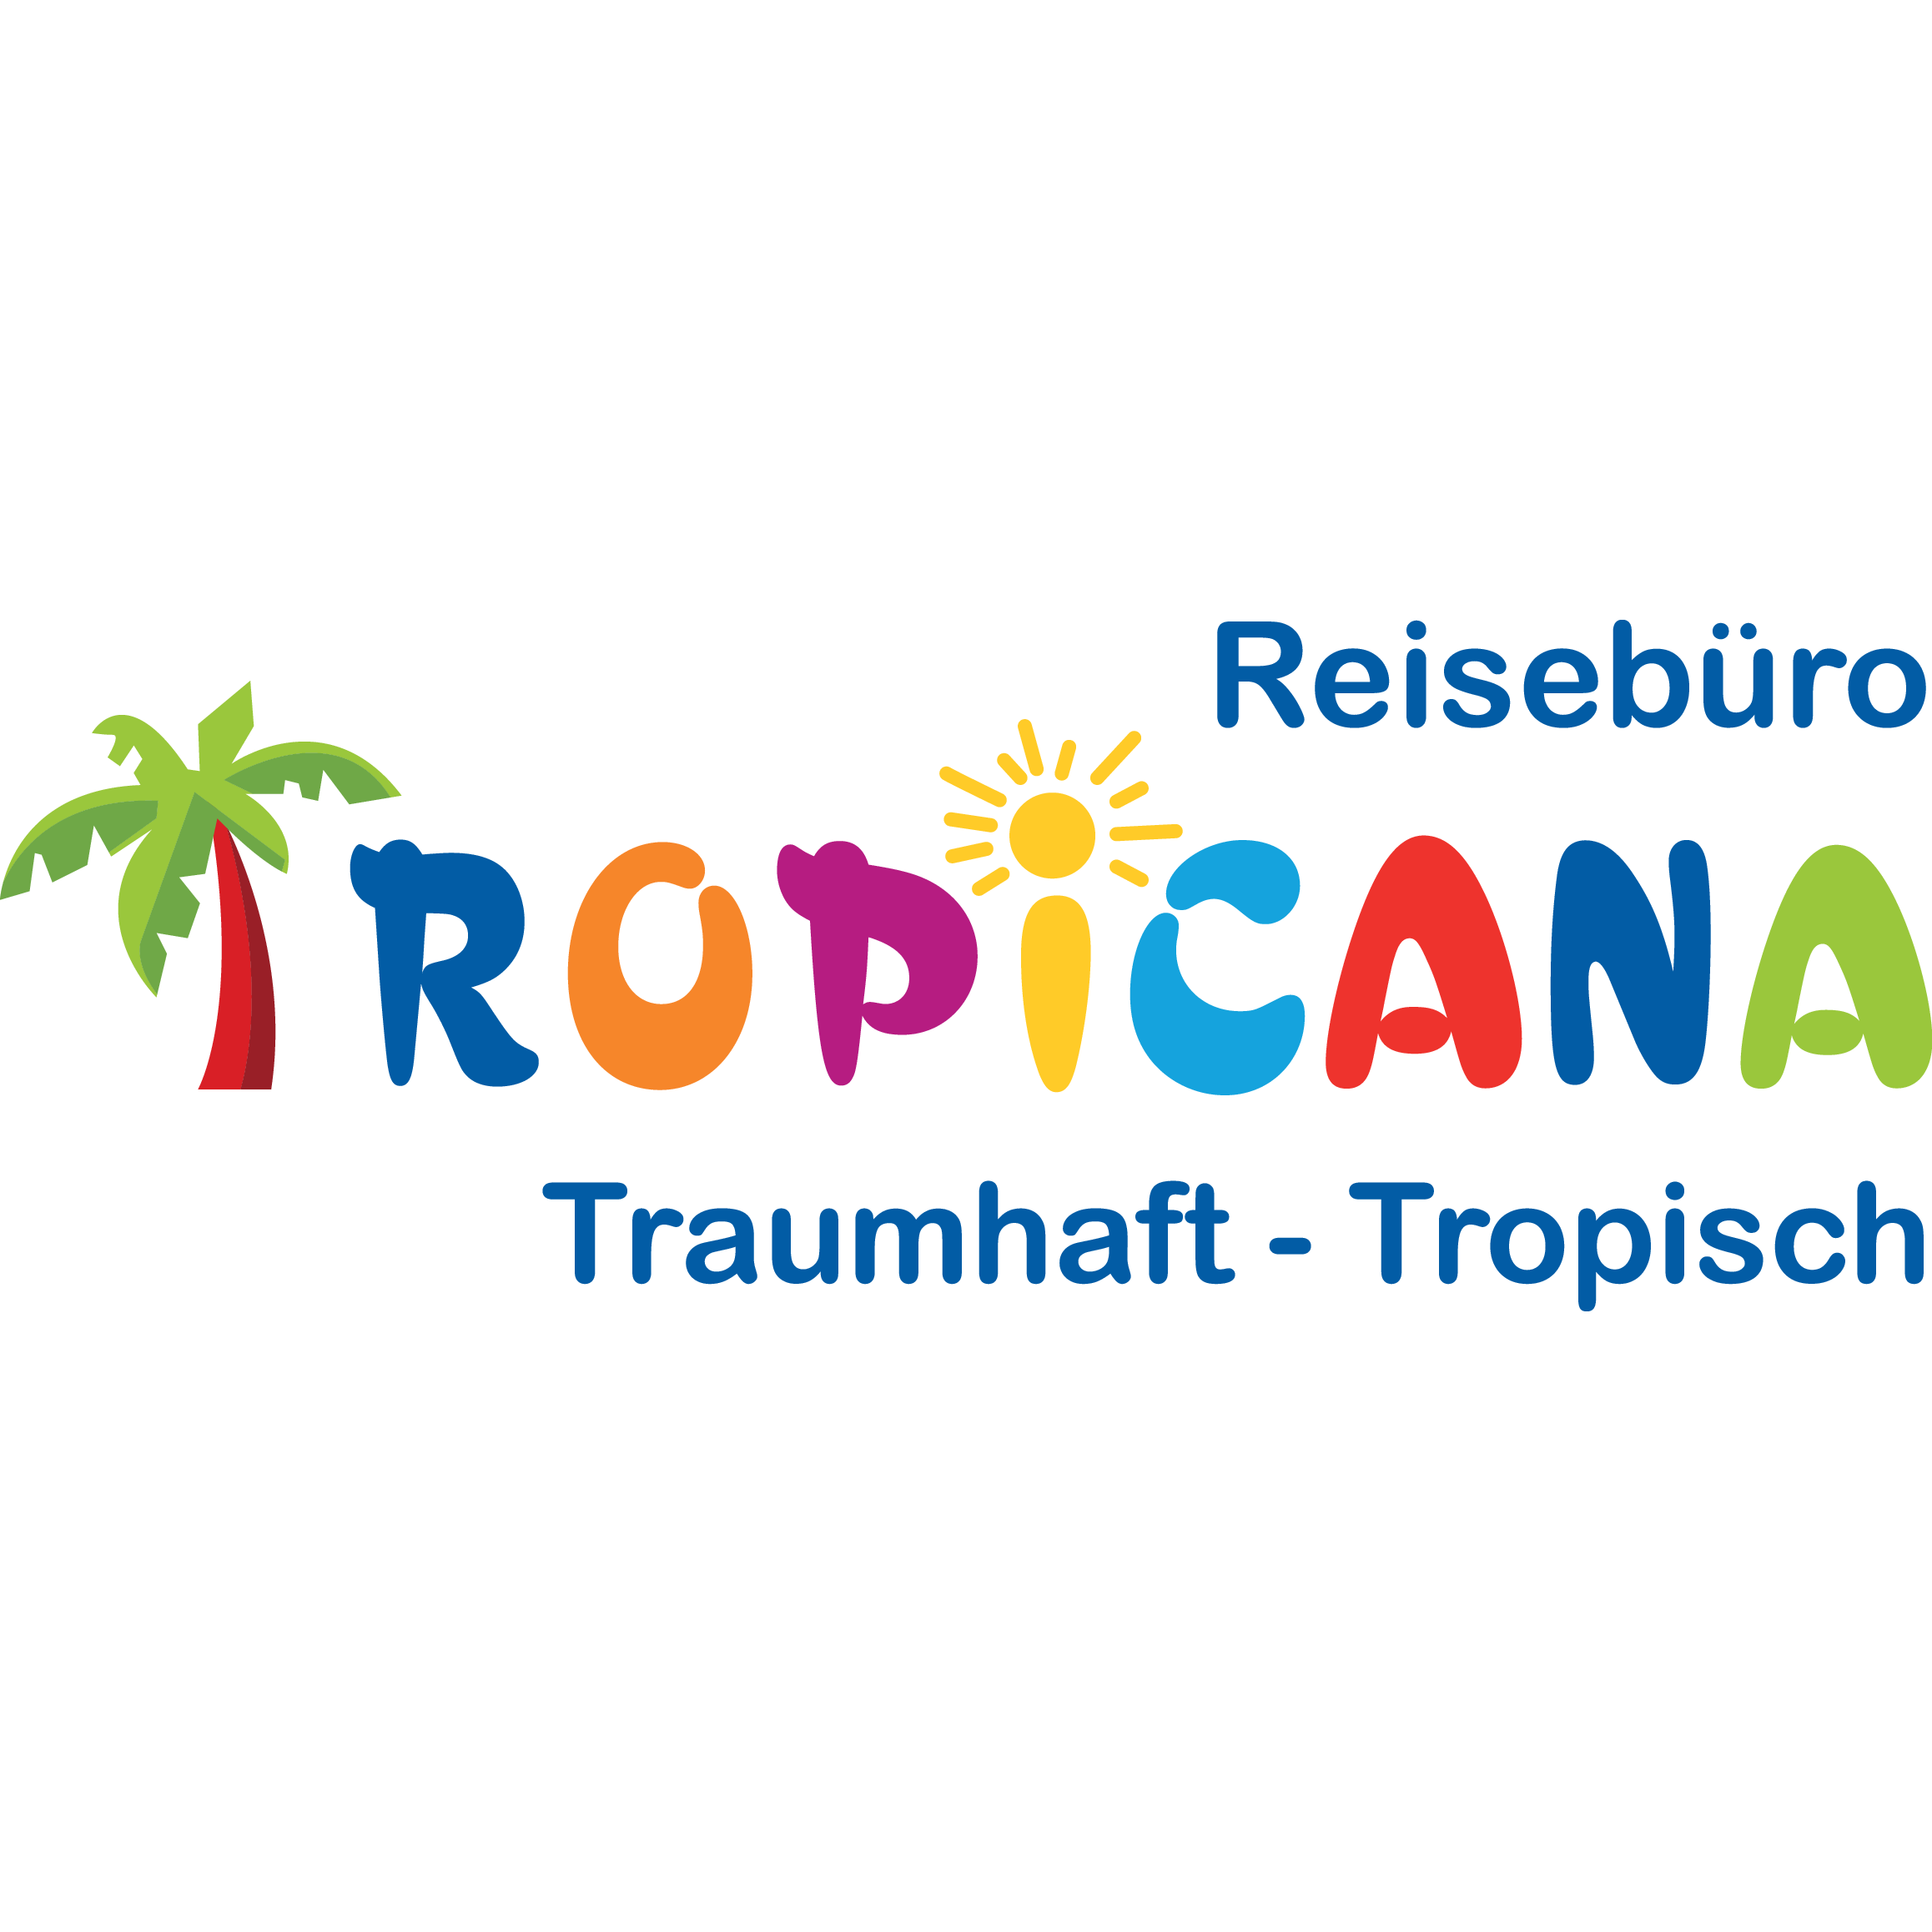 Reisebüro Tropicana in Bamberg - Logo